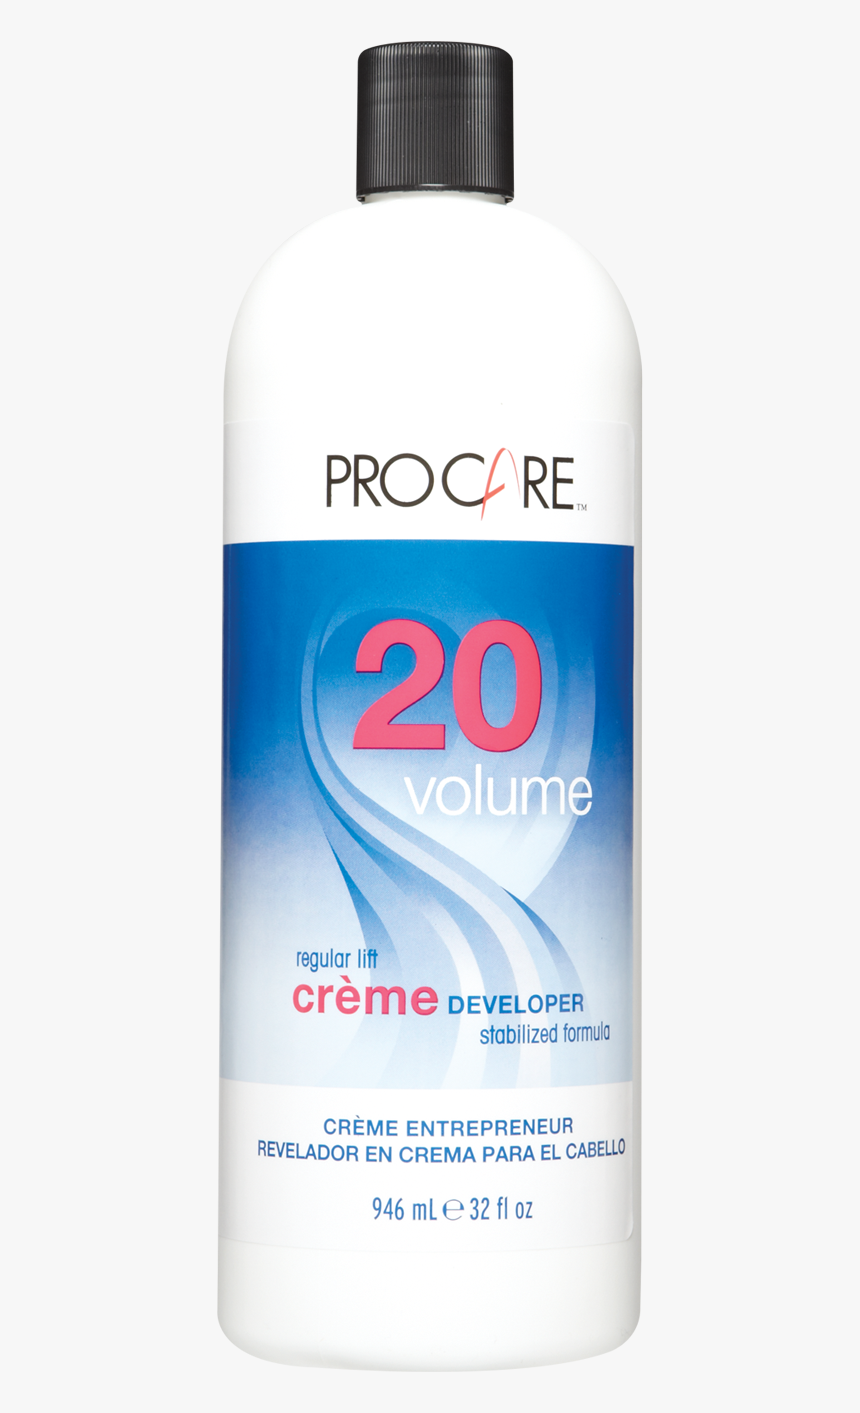 20 Volume Creme Developer - Bottle, HD Png Download, Free Download